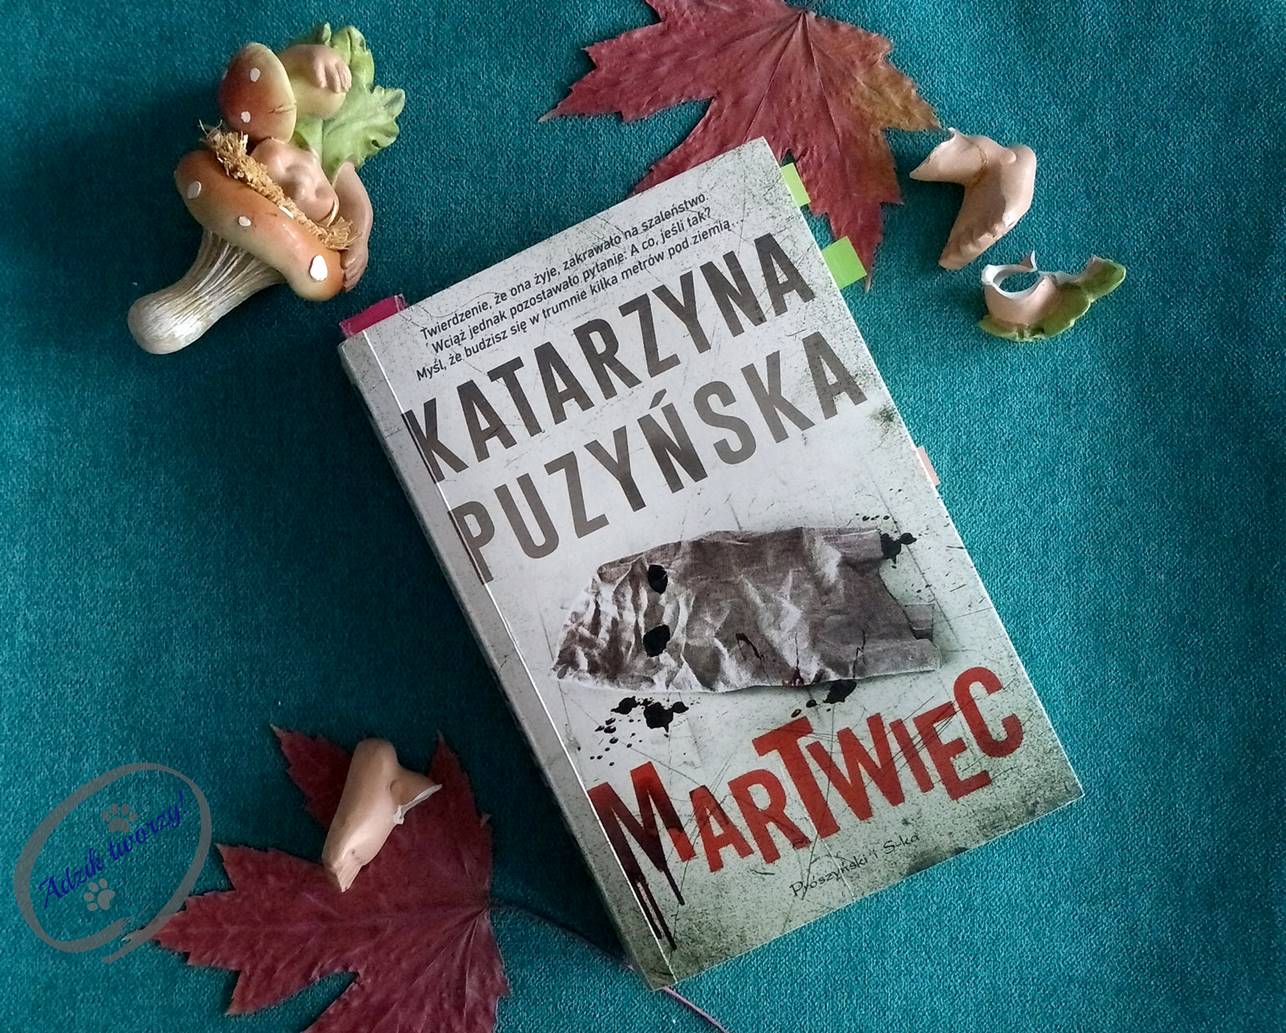 "Martwiec" Katarzyna Puzyńska seria "Lipowo" - recenzja książki - Adzik tworzy